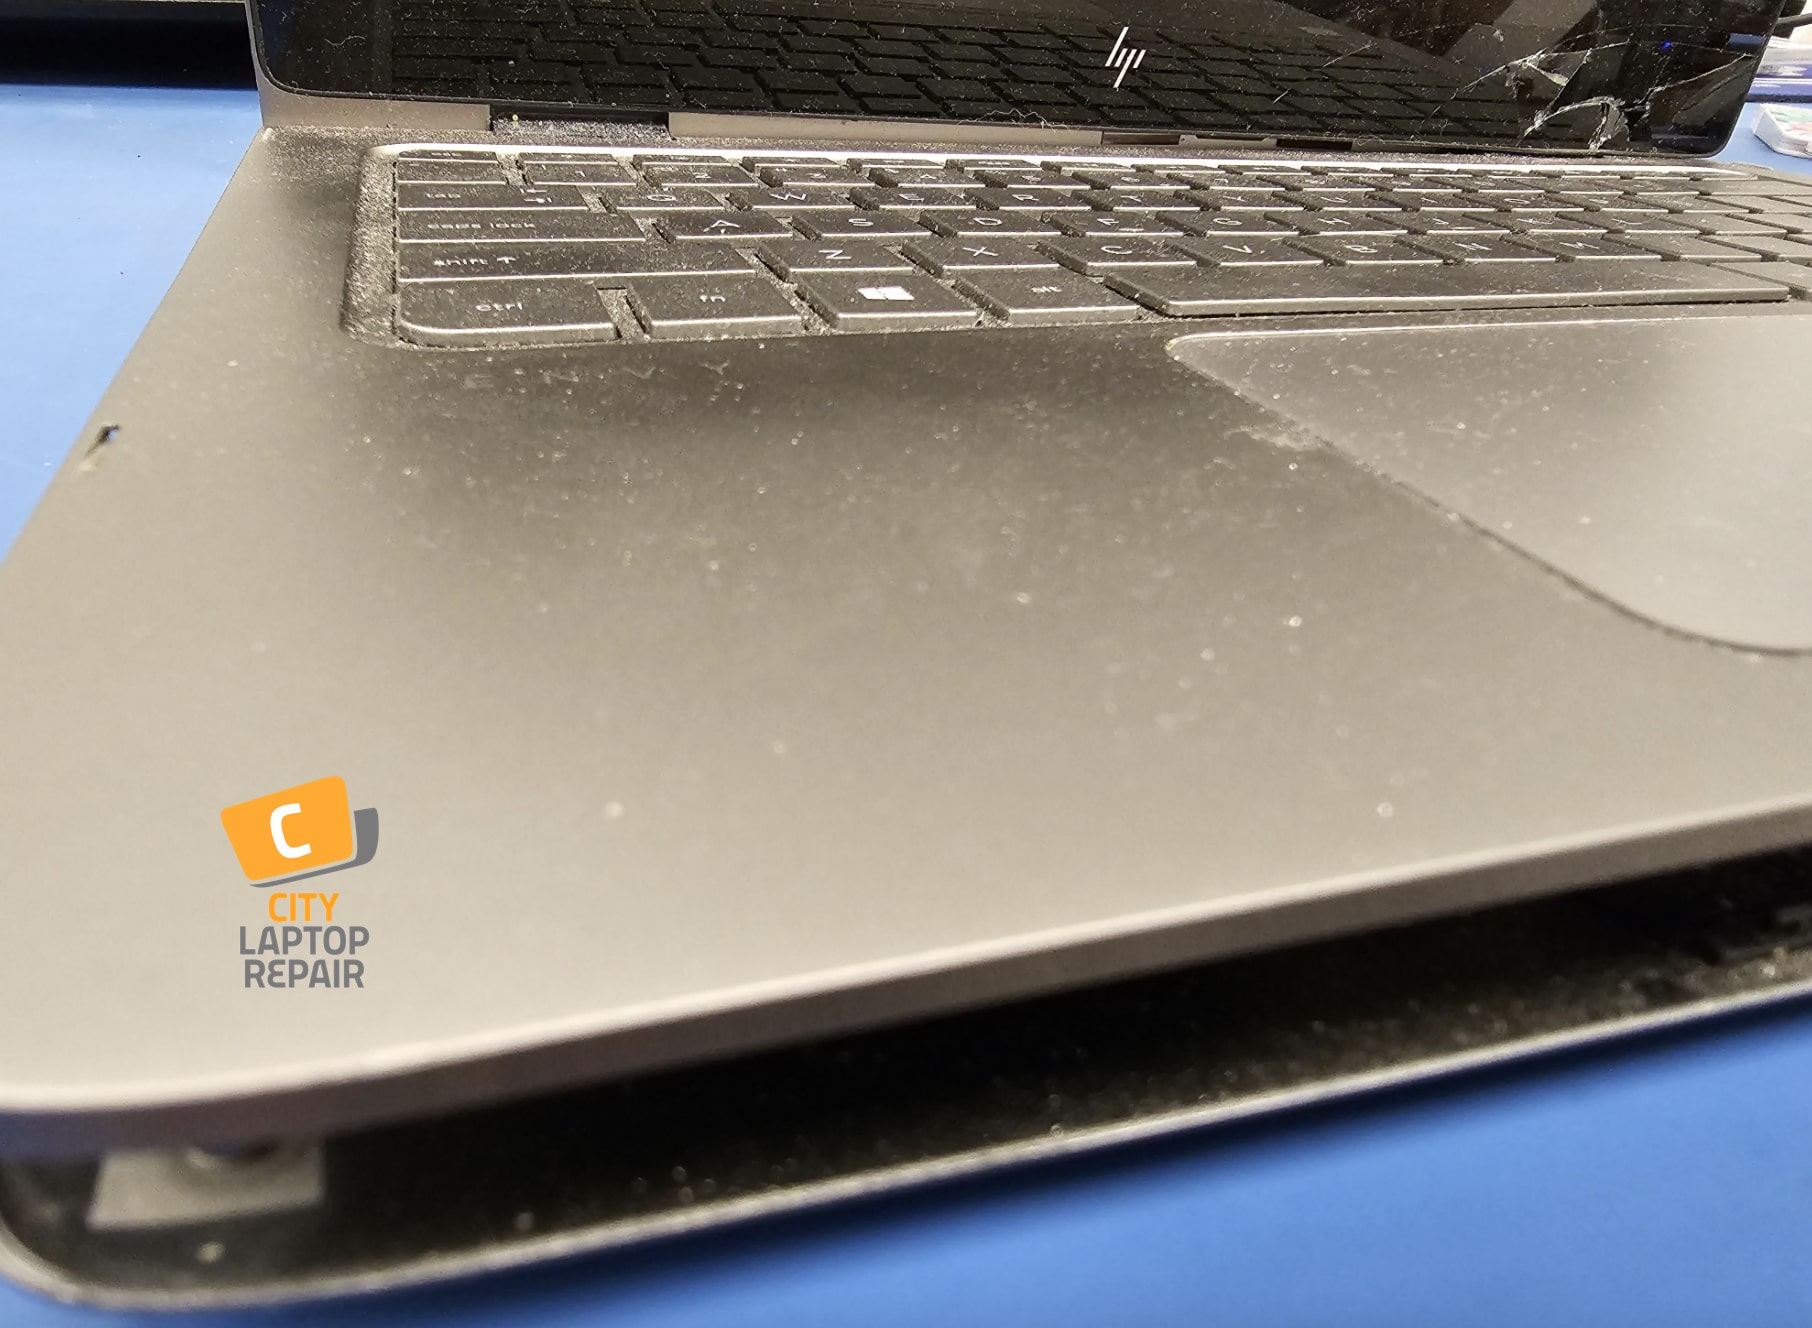 Open case of HP Laptop Computer Repair